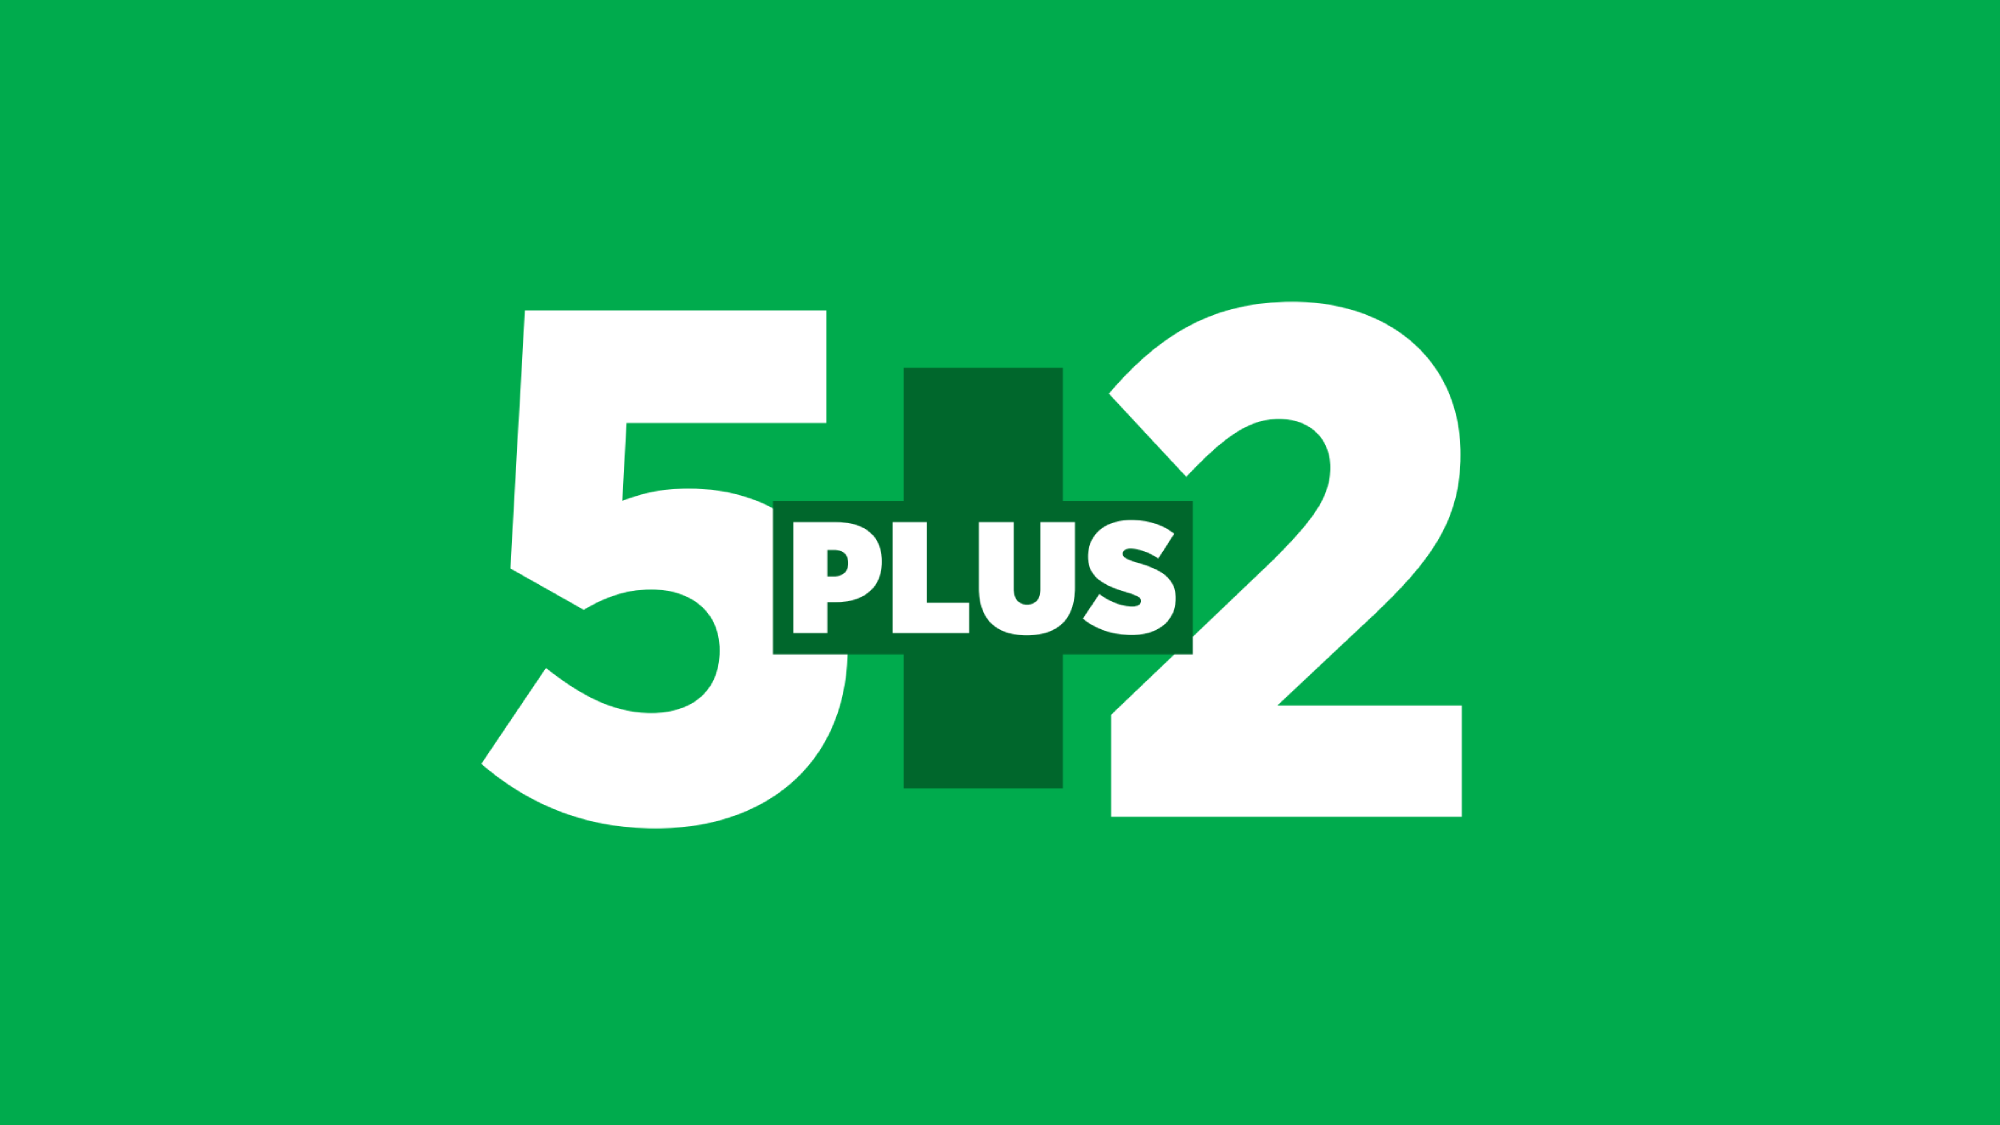 Logo of 5plus2 weekly